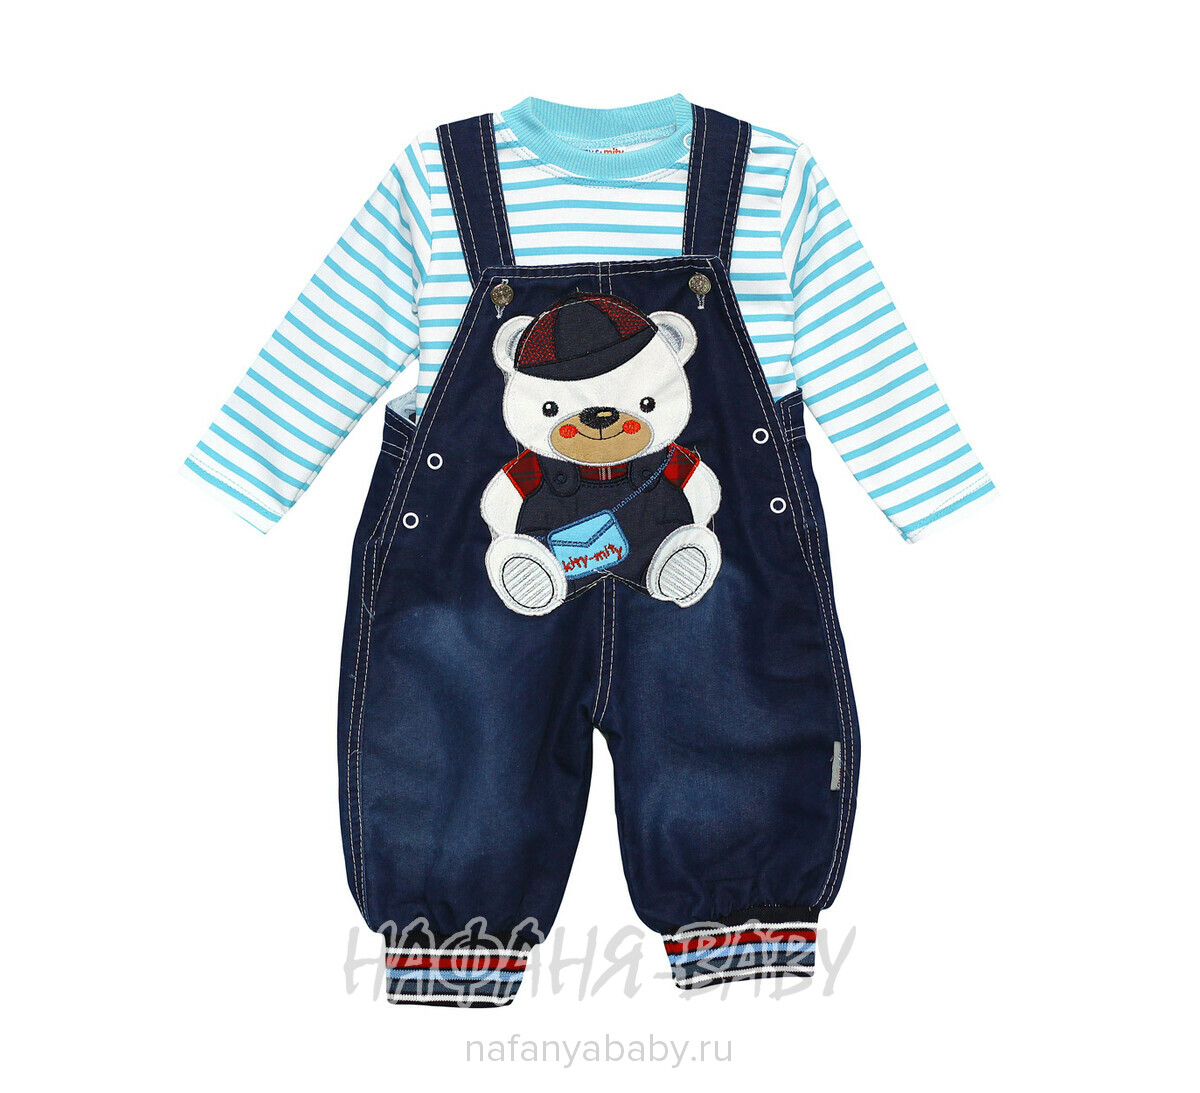 Детский костюм (кофта+джинсовый полукомбинезон) Kity & Mity арт: 920, 1-4 года, оптом Турция